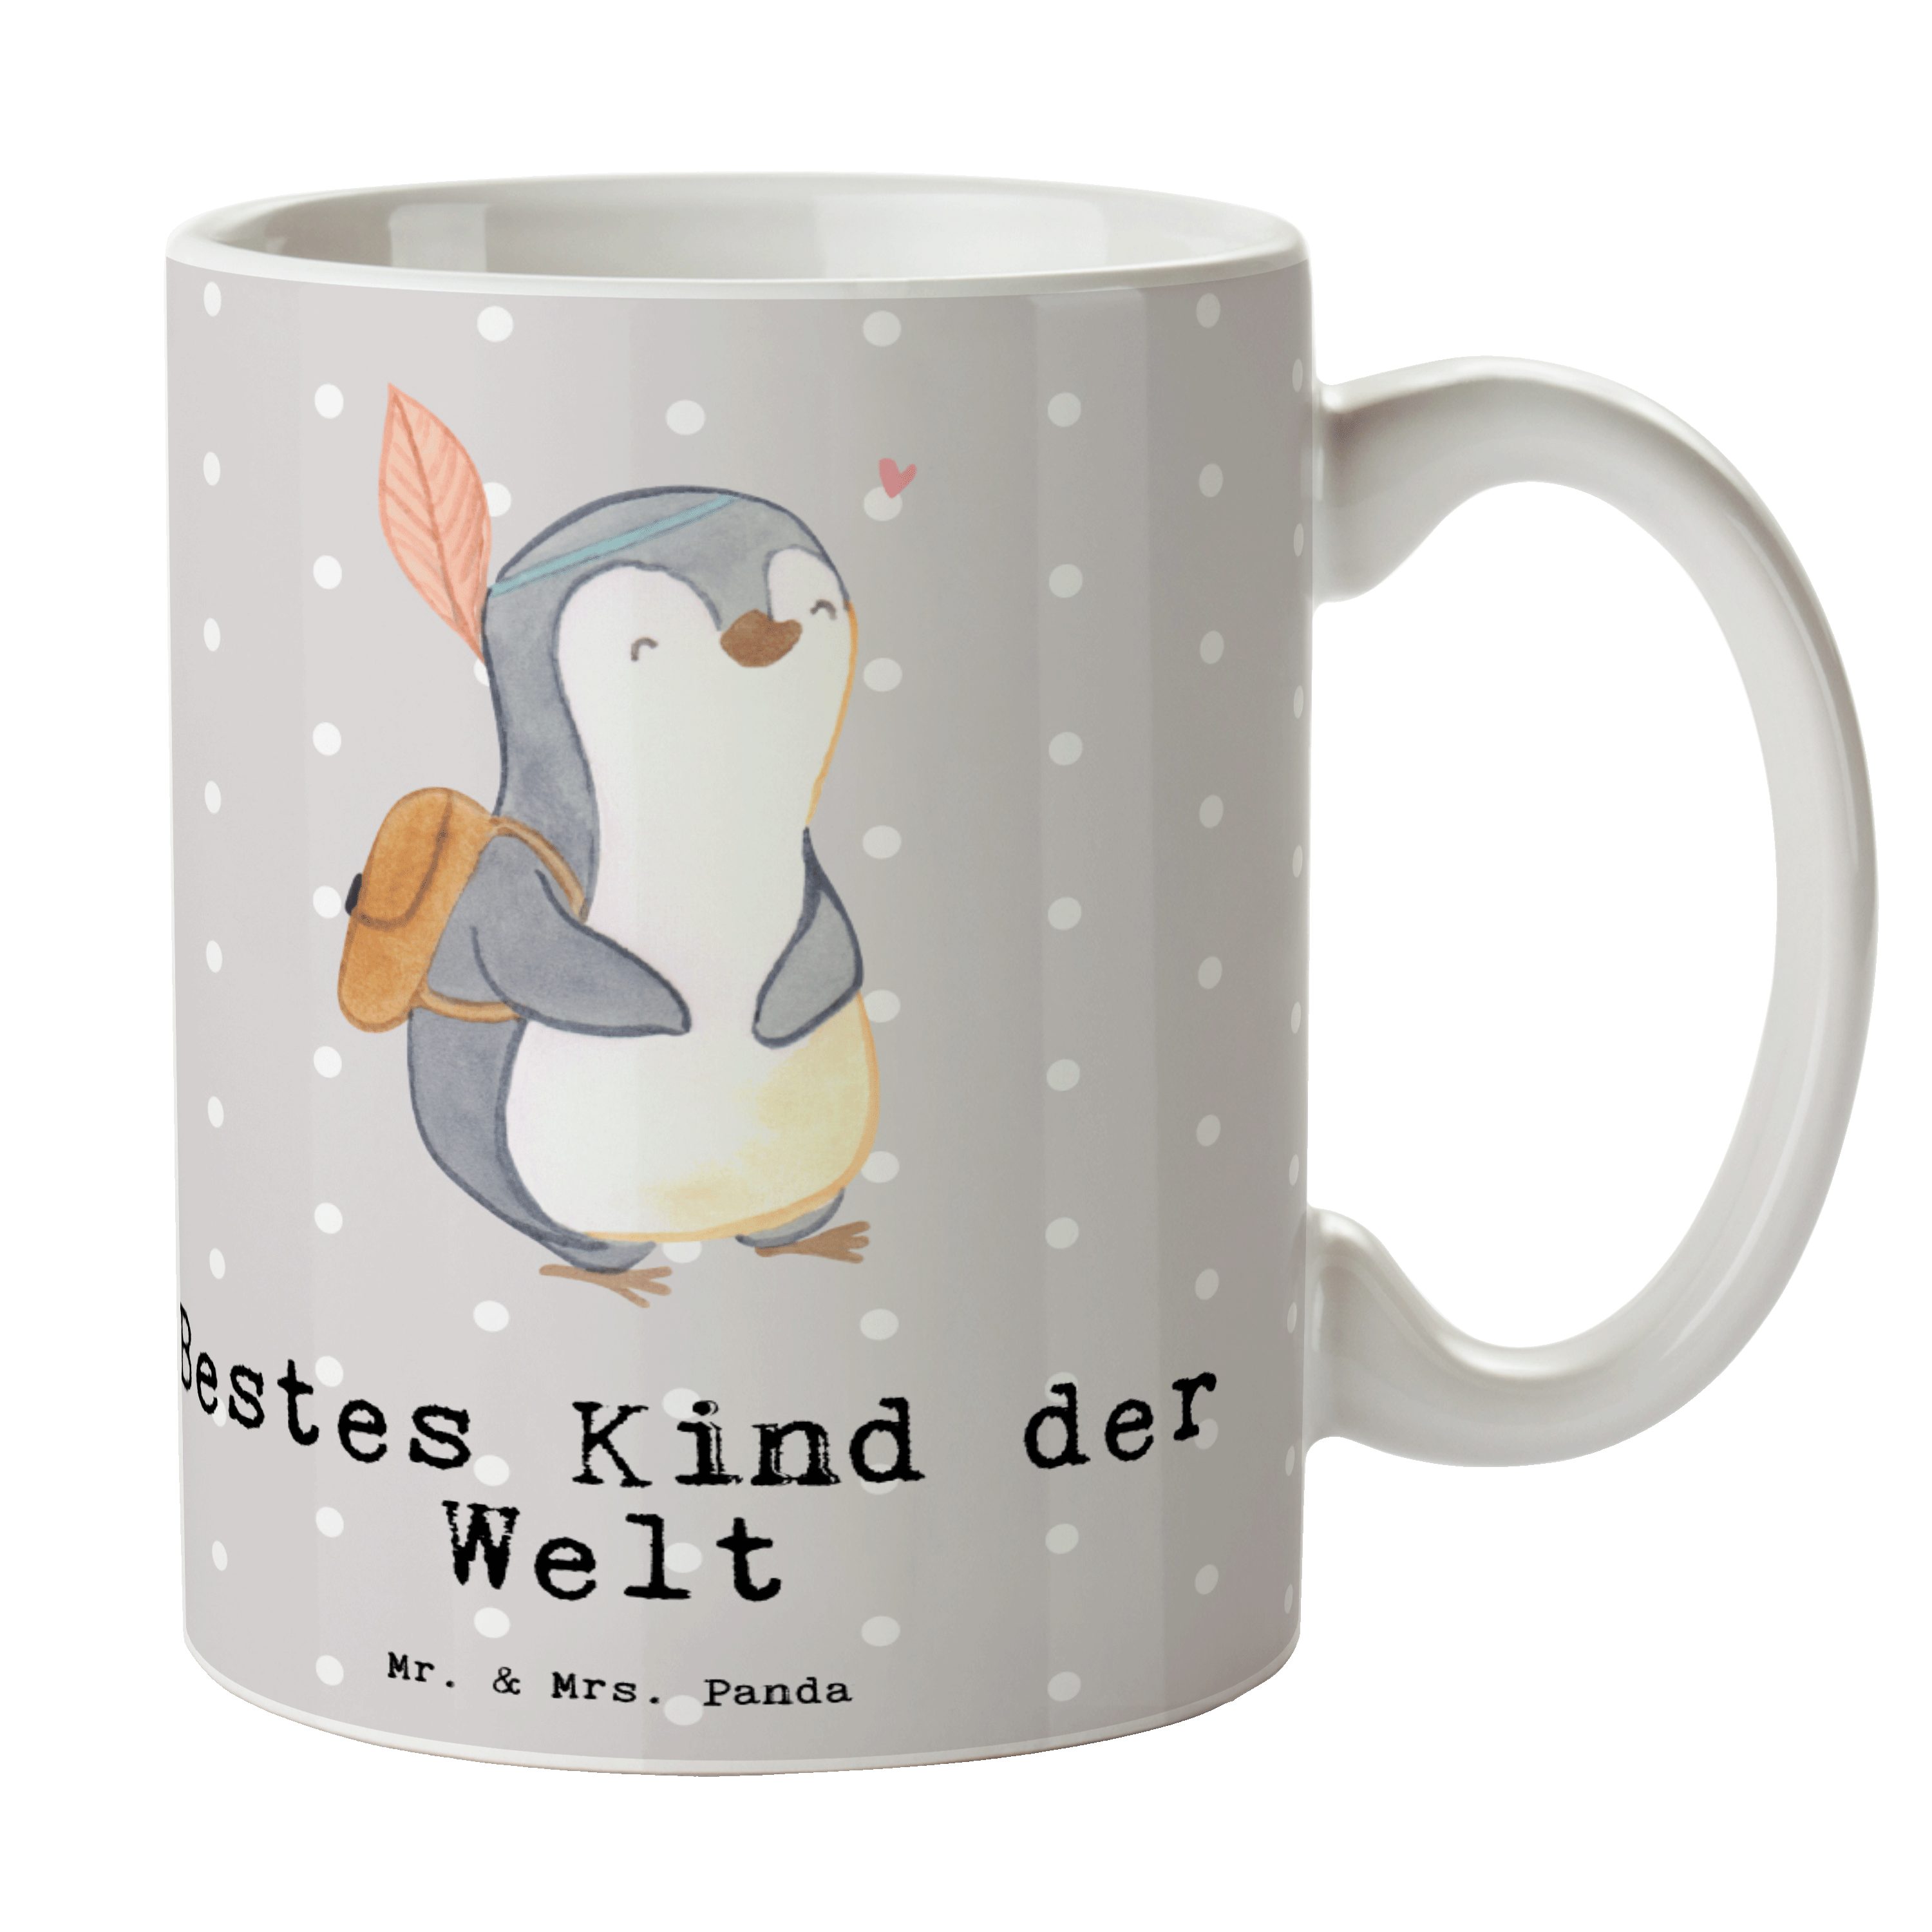 Mr. & Mrs. Panda Tasse Pinguin Bestes Kind der Welt - Grau Pastell - Geschenk, Nachwuchs, Ta, Keramik